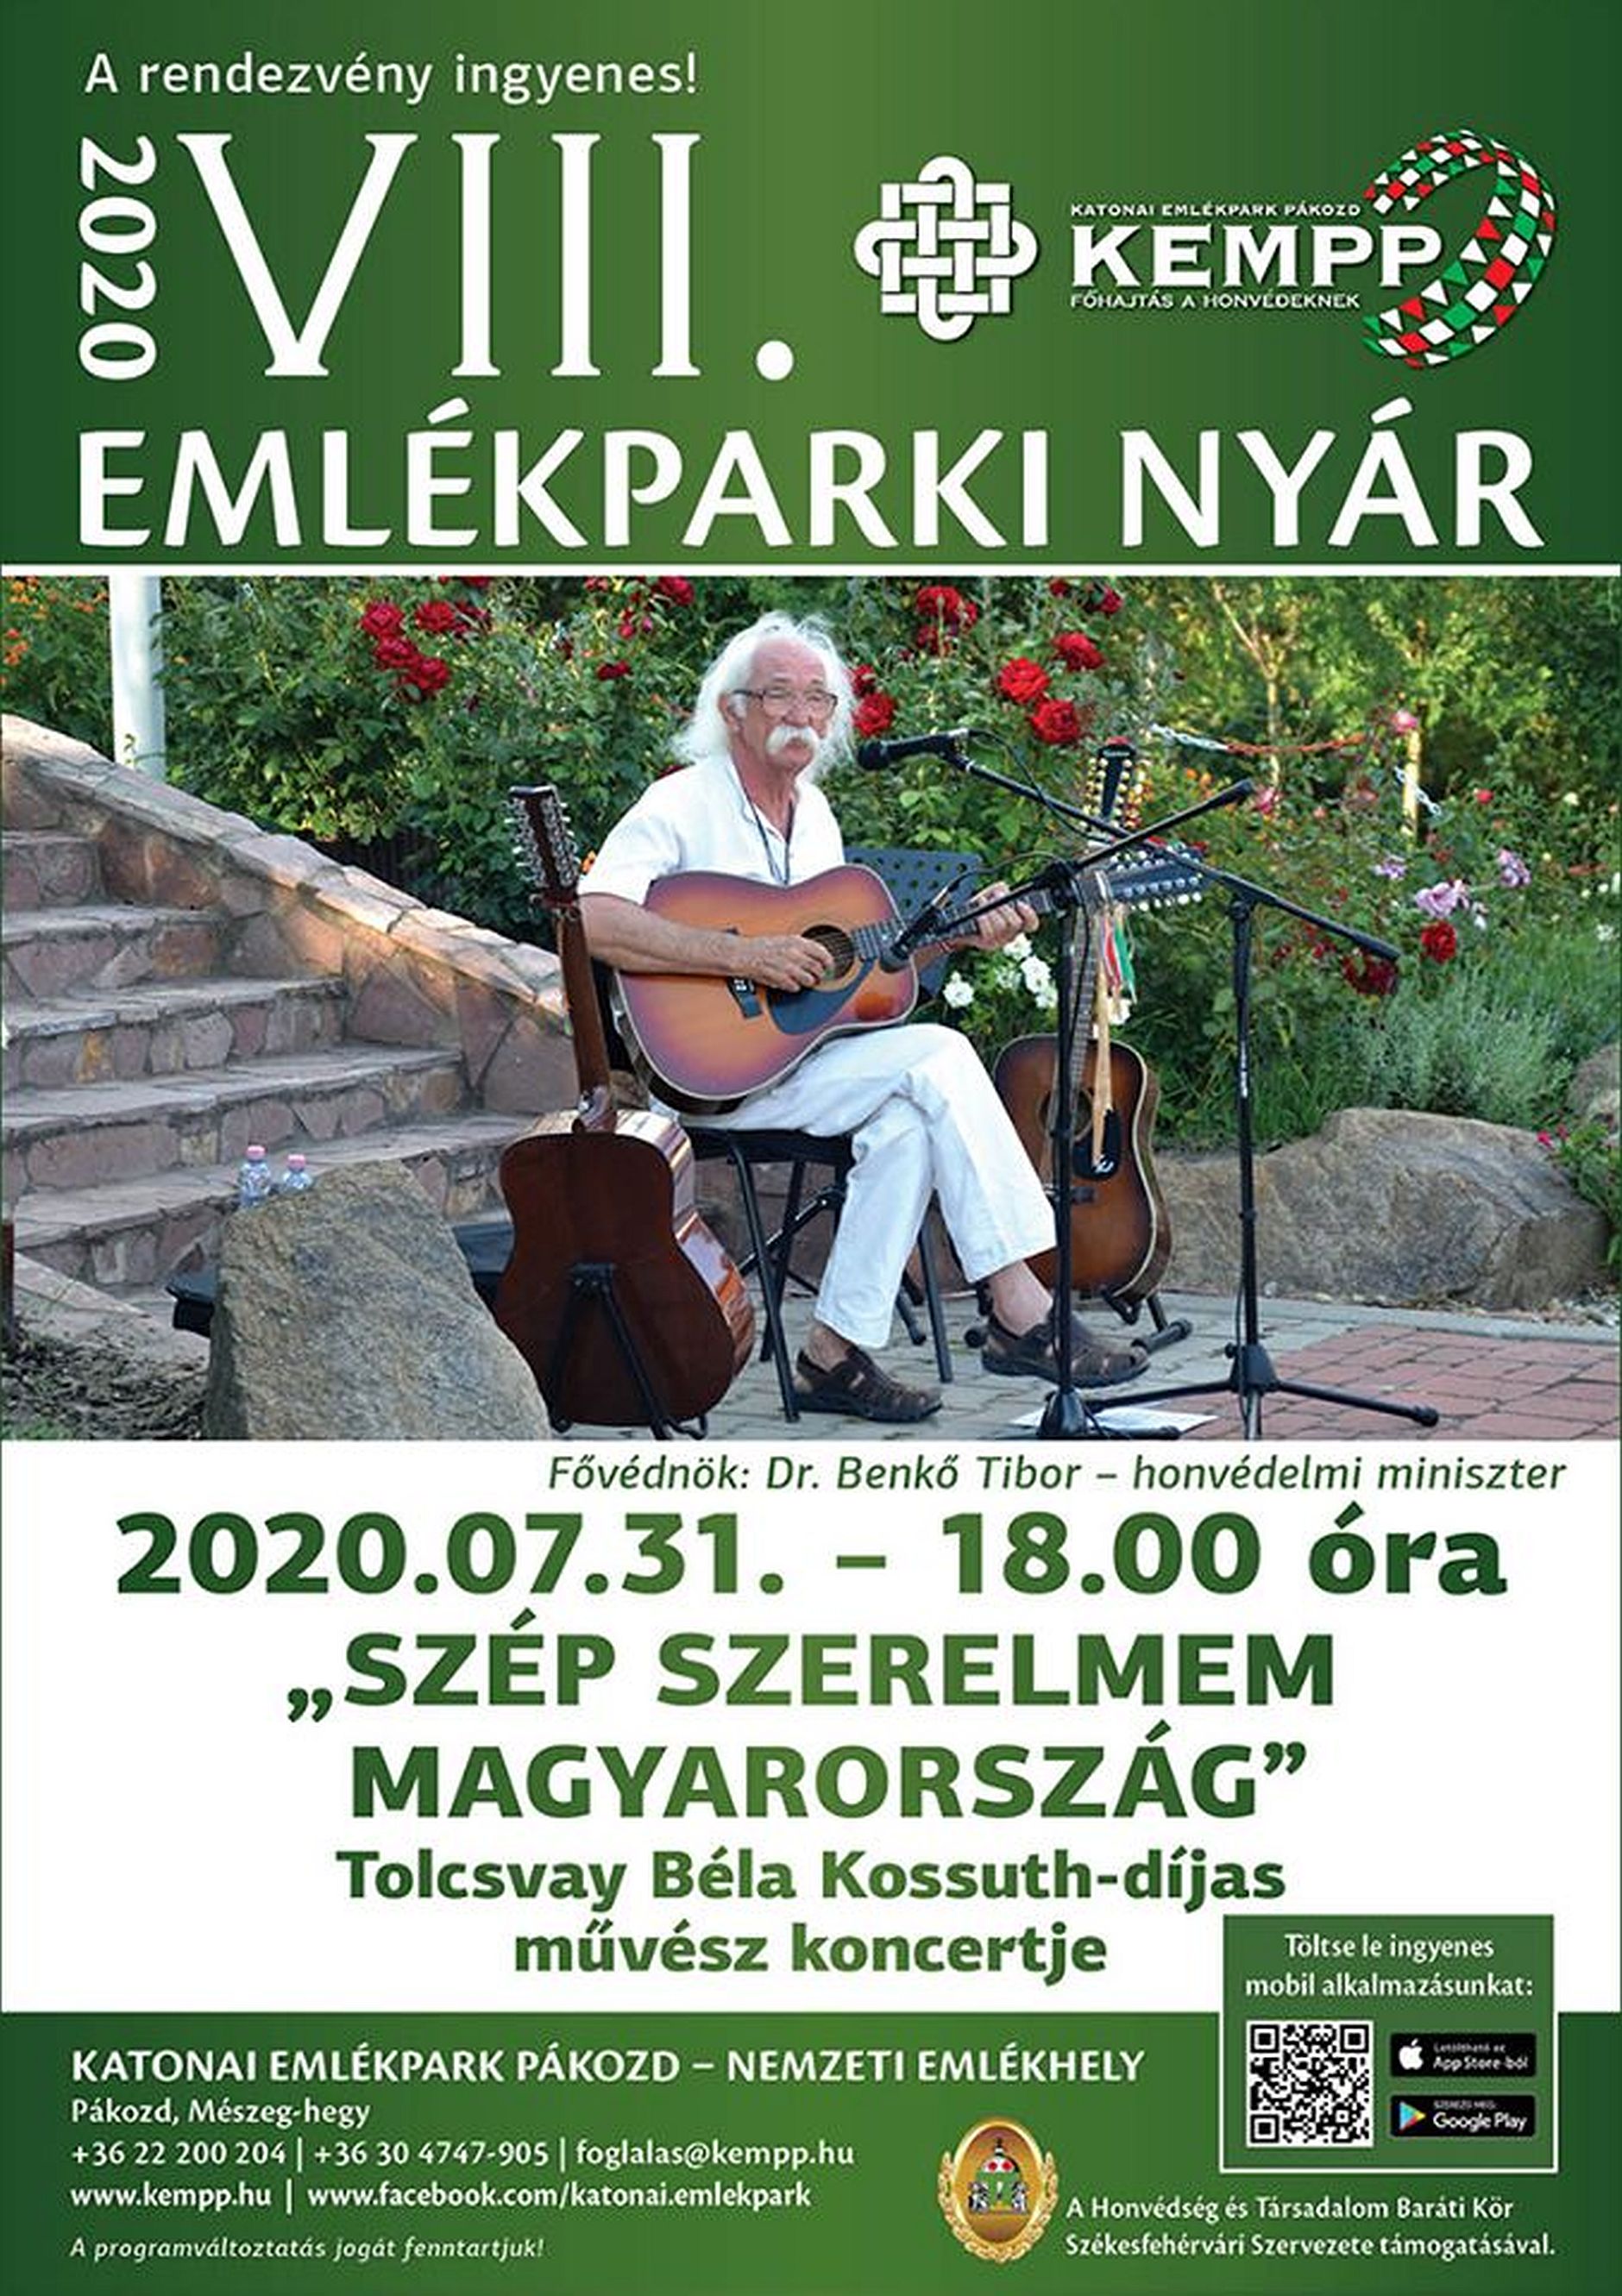 Tolcsvay Béla, Kossuth-díjas énekmondó ad koncertet pénteken a Katonai Emlékparkban